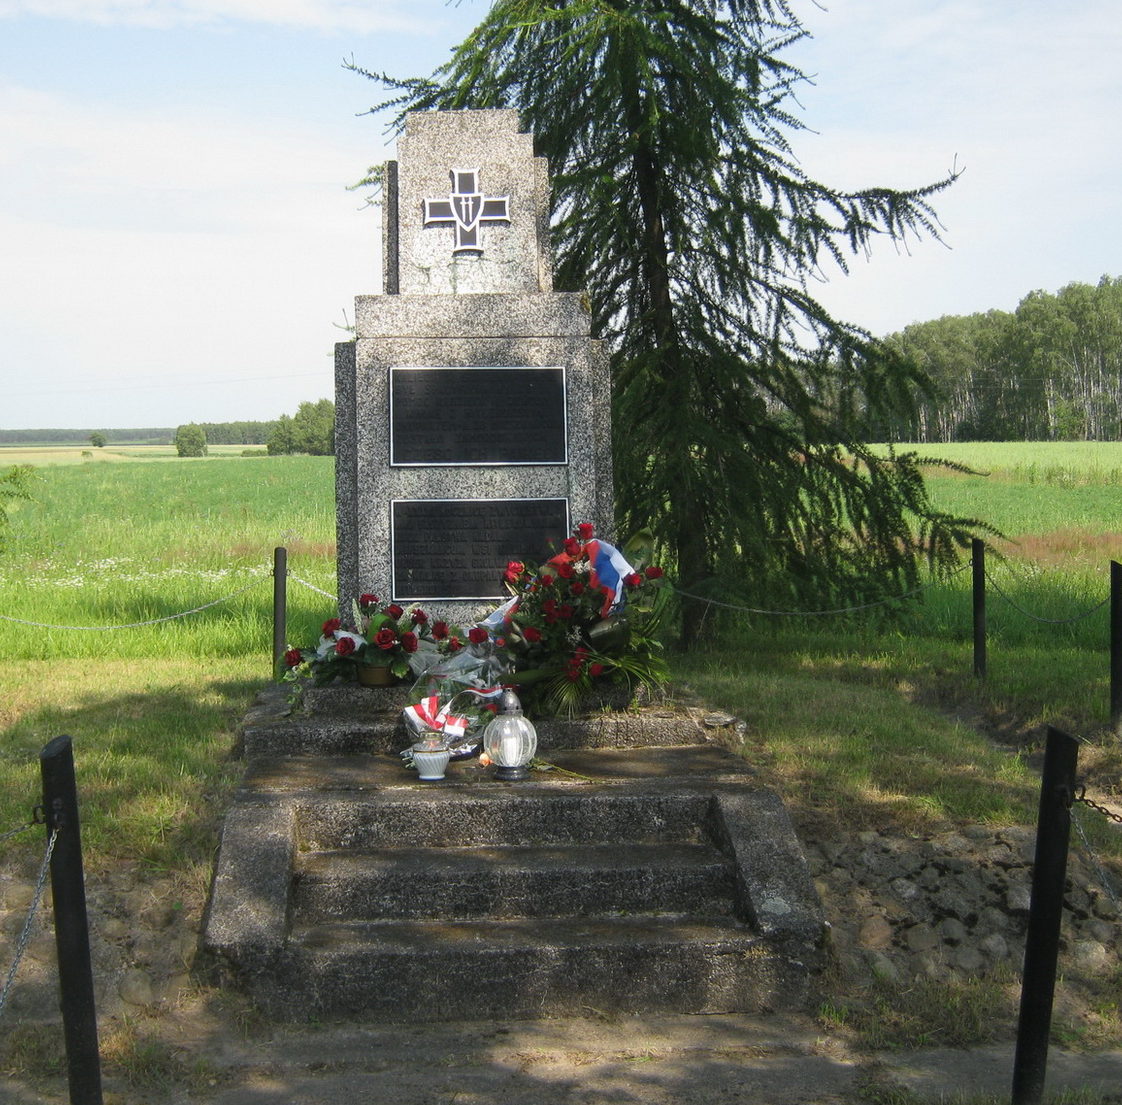 д. Калилув, гмина Бяла Подляска. Памятный знак погибшим польским гражданам в Шталаге-307.